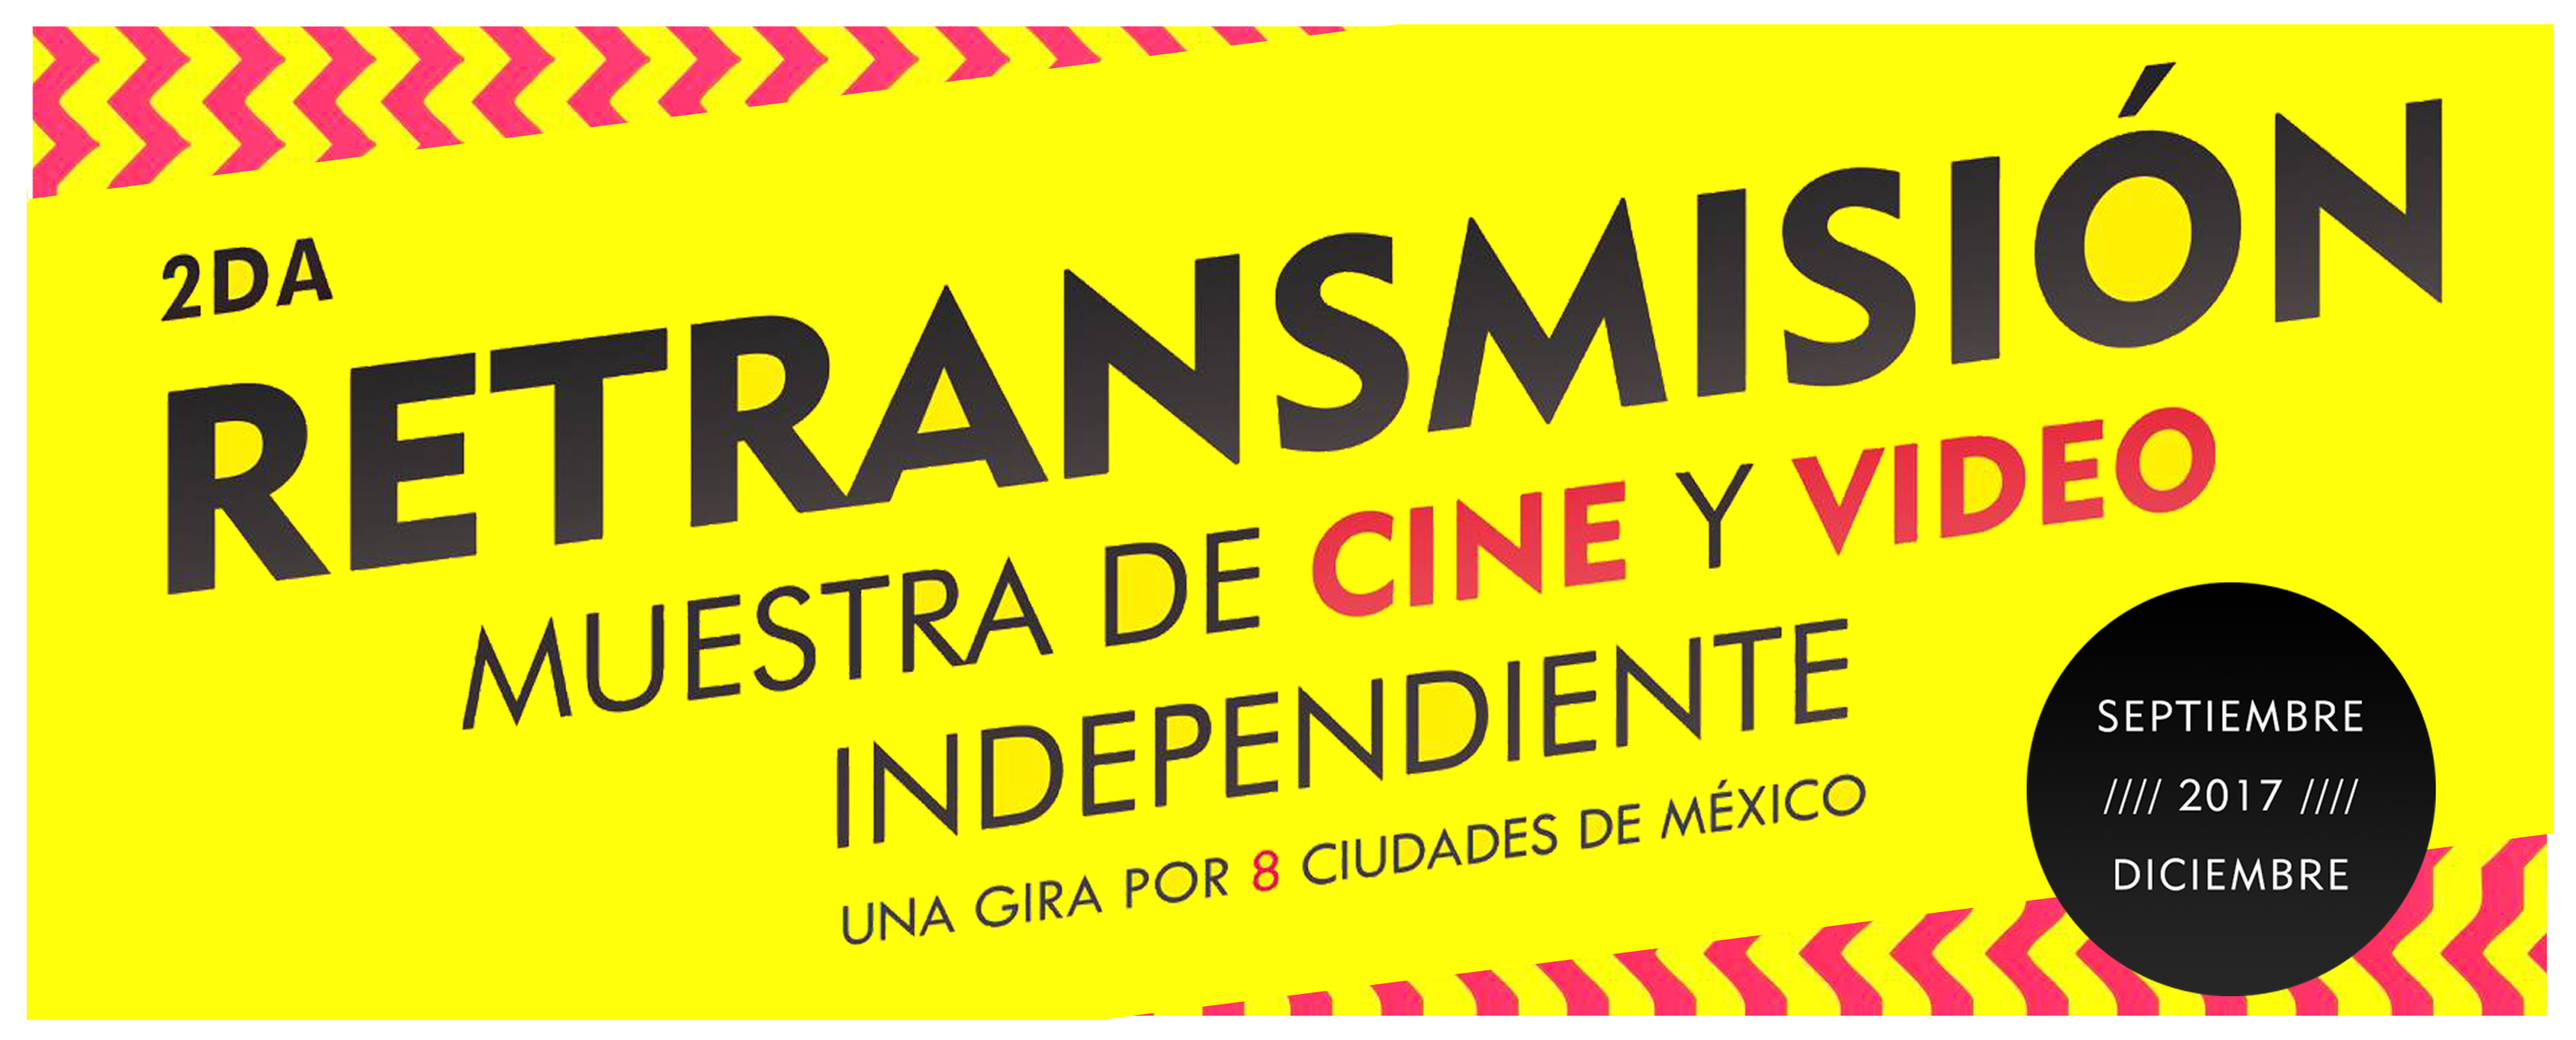 Retransmisión Segunda Muestra de Cine y Video Independiente 2016 Festival de Cine Independiente Despues Tour de Cine Independiente